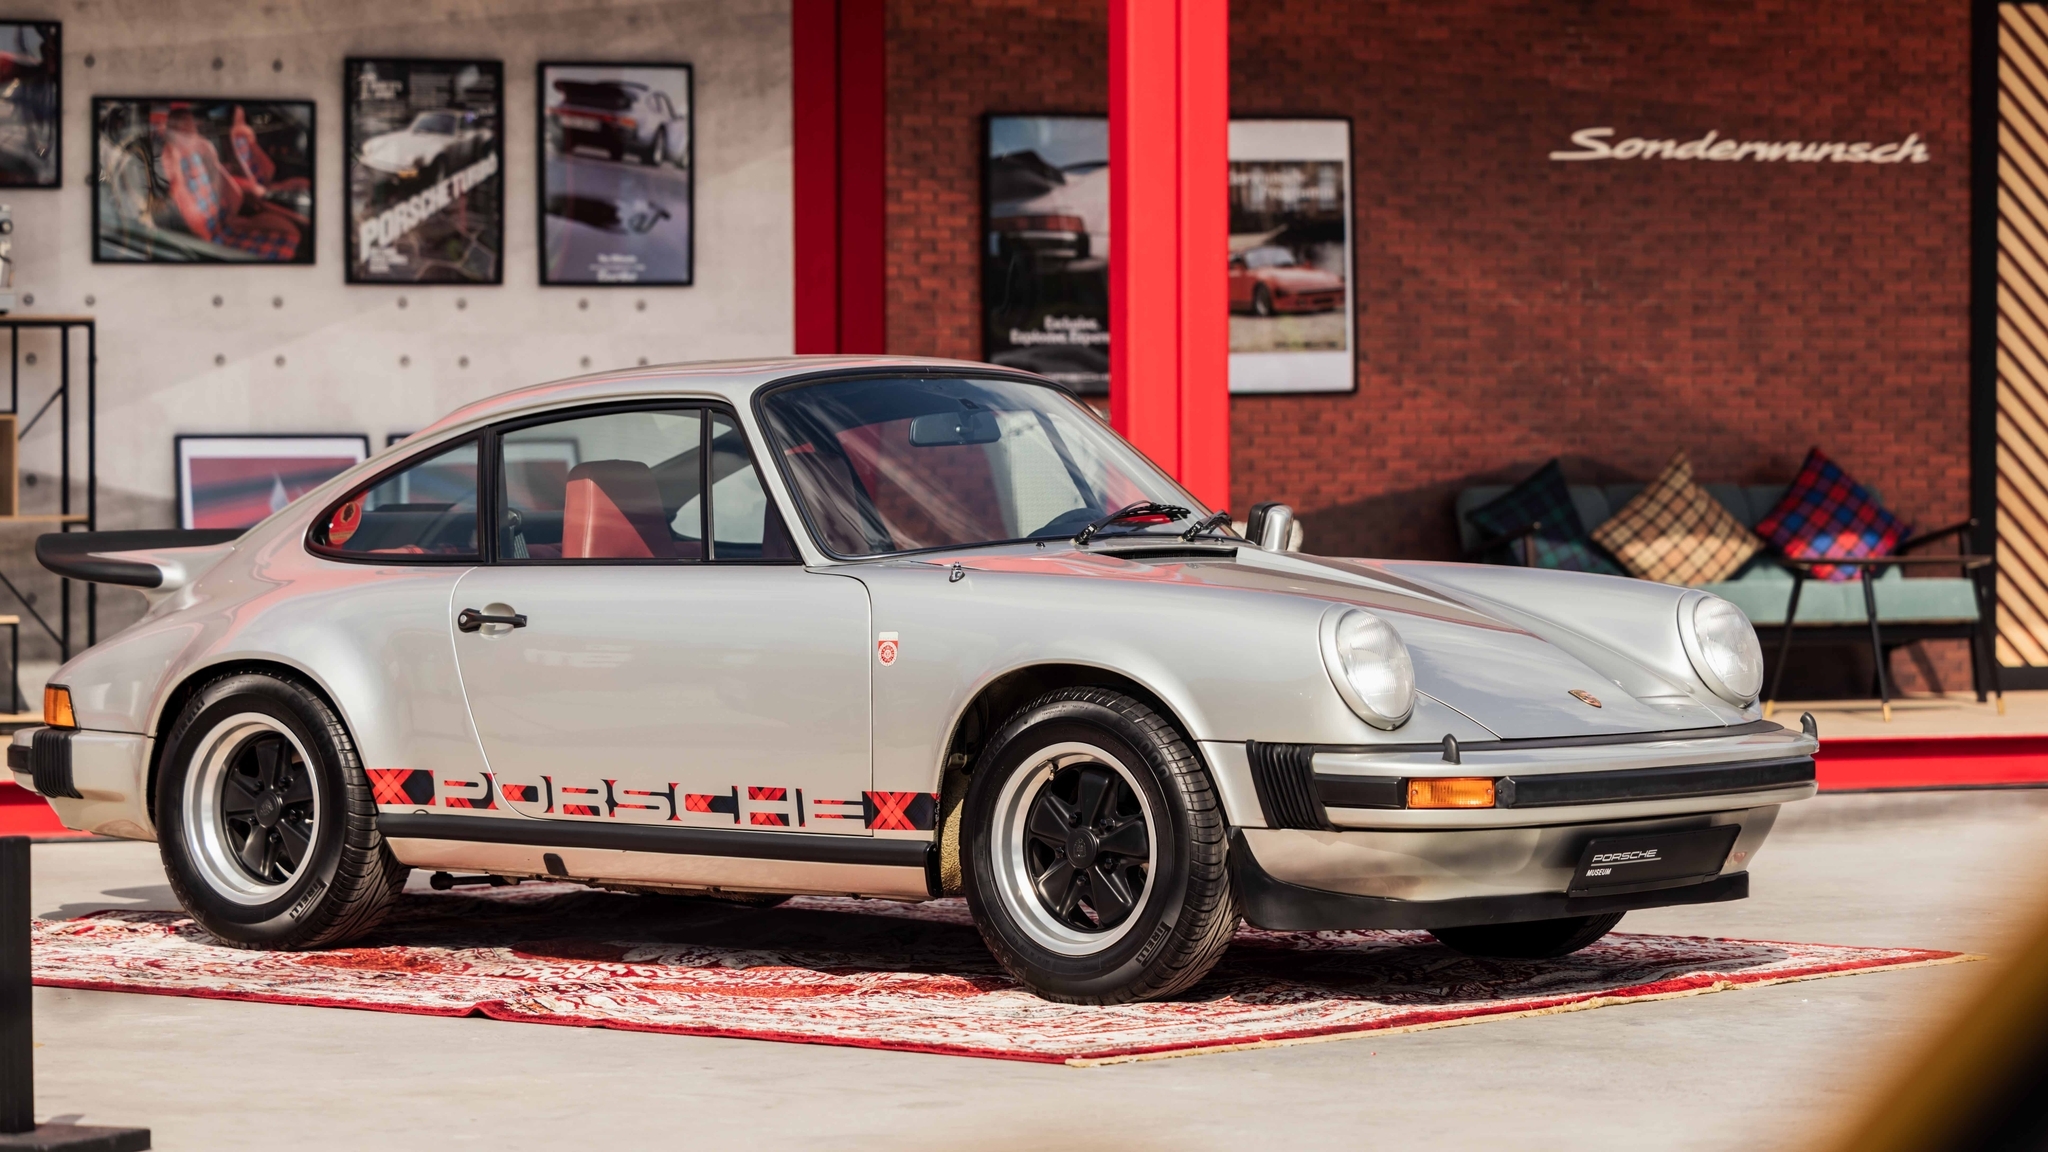 Porsche показала уникальное купе в честь первого экземпляра модели 911 Turbo